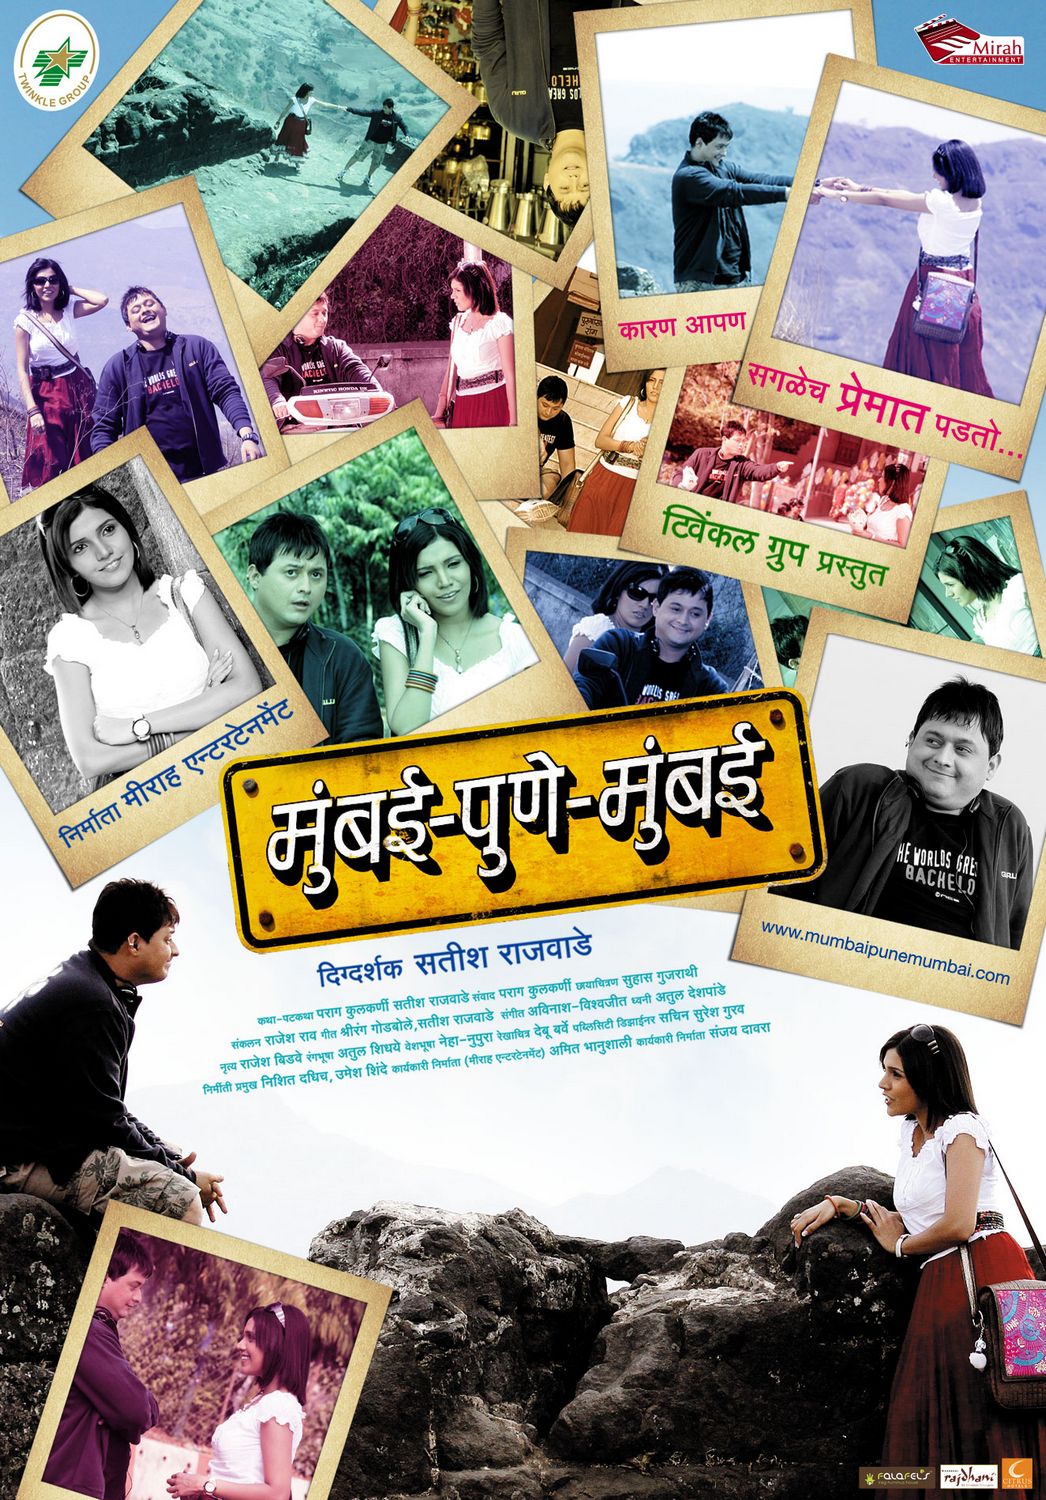 Extra Large Movie Poster Image for Mumbai-Pune-Mumbai (#10 of 12)